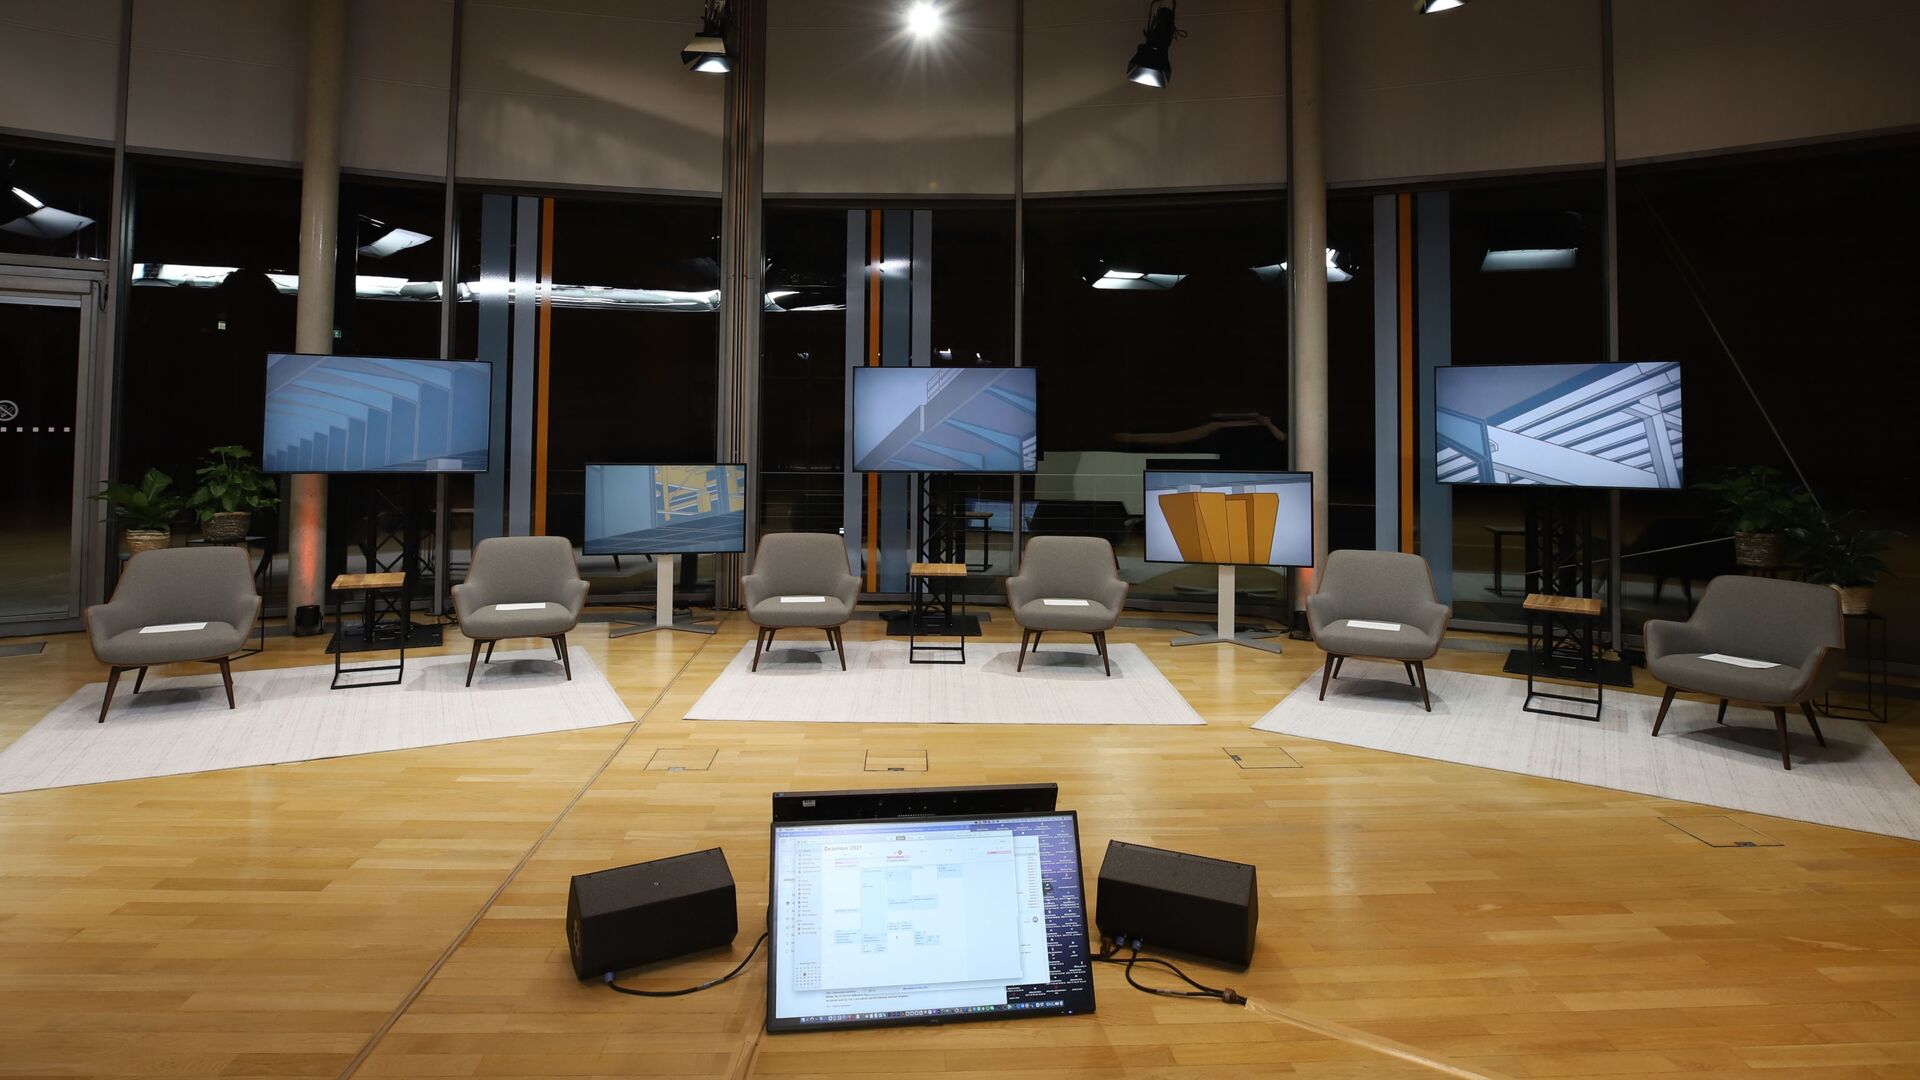 Stuhlreihen vor vielen Bildschirmen für hybride Konferenz